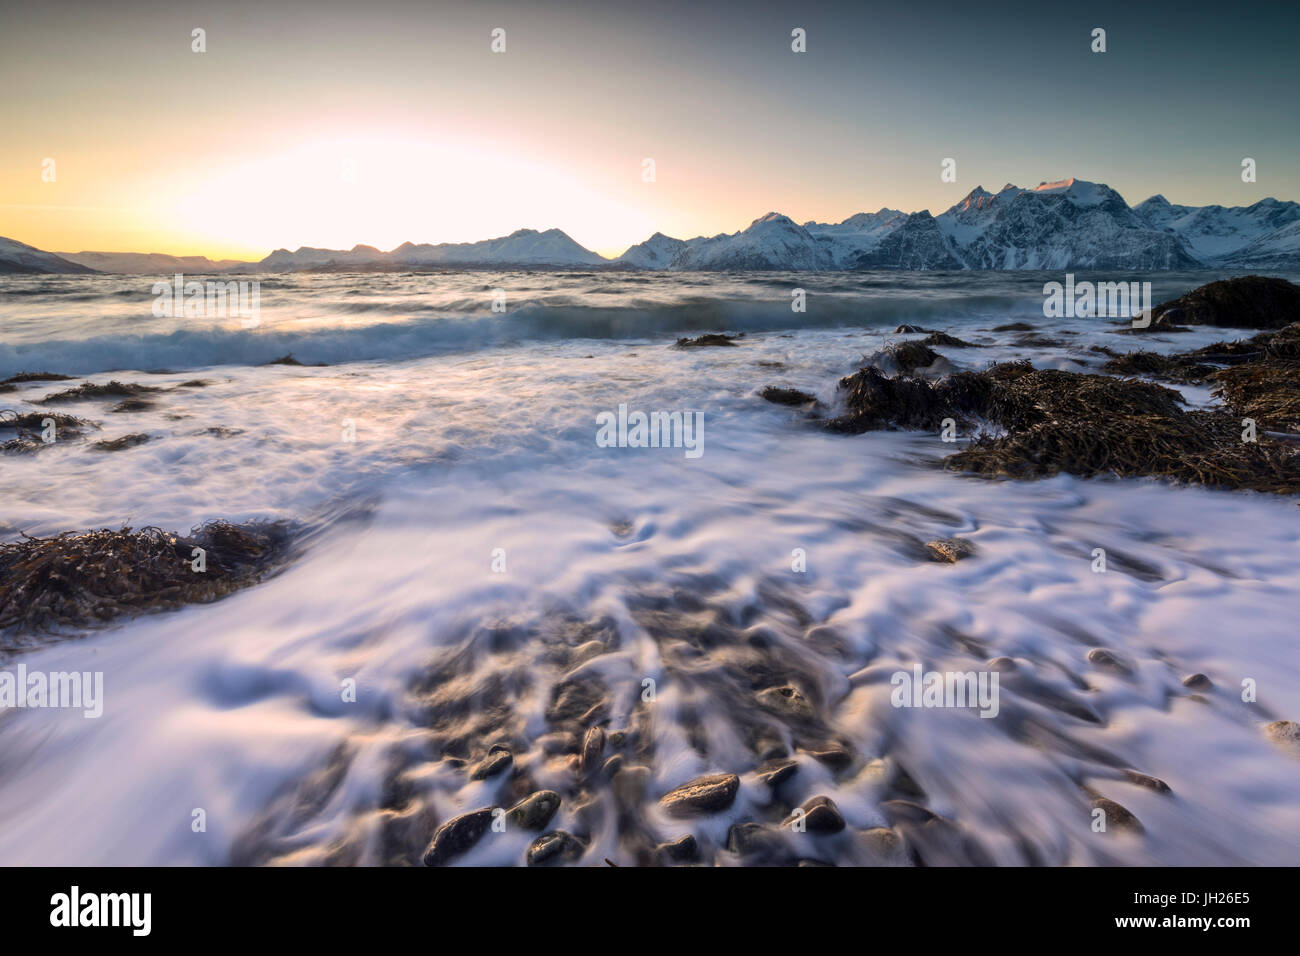 Das Abendlicht spiegelt sich auf den Wellen des kalten Meer stürzt auf den Felsen, Djupvik, Lyngen Alpen, Troms, Norwegen, Skandinavien Stockfoto